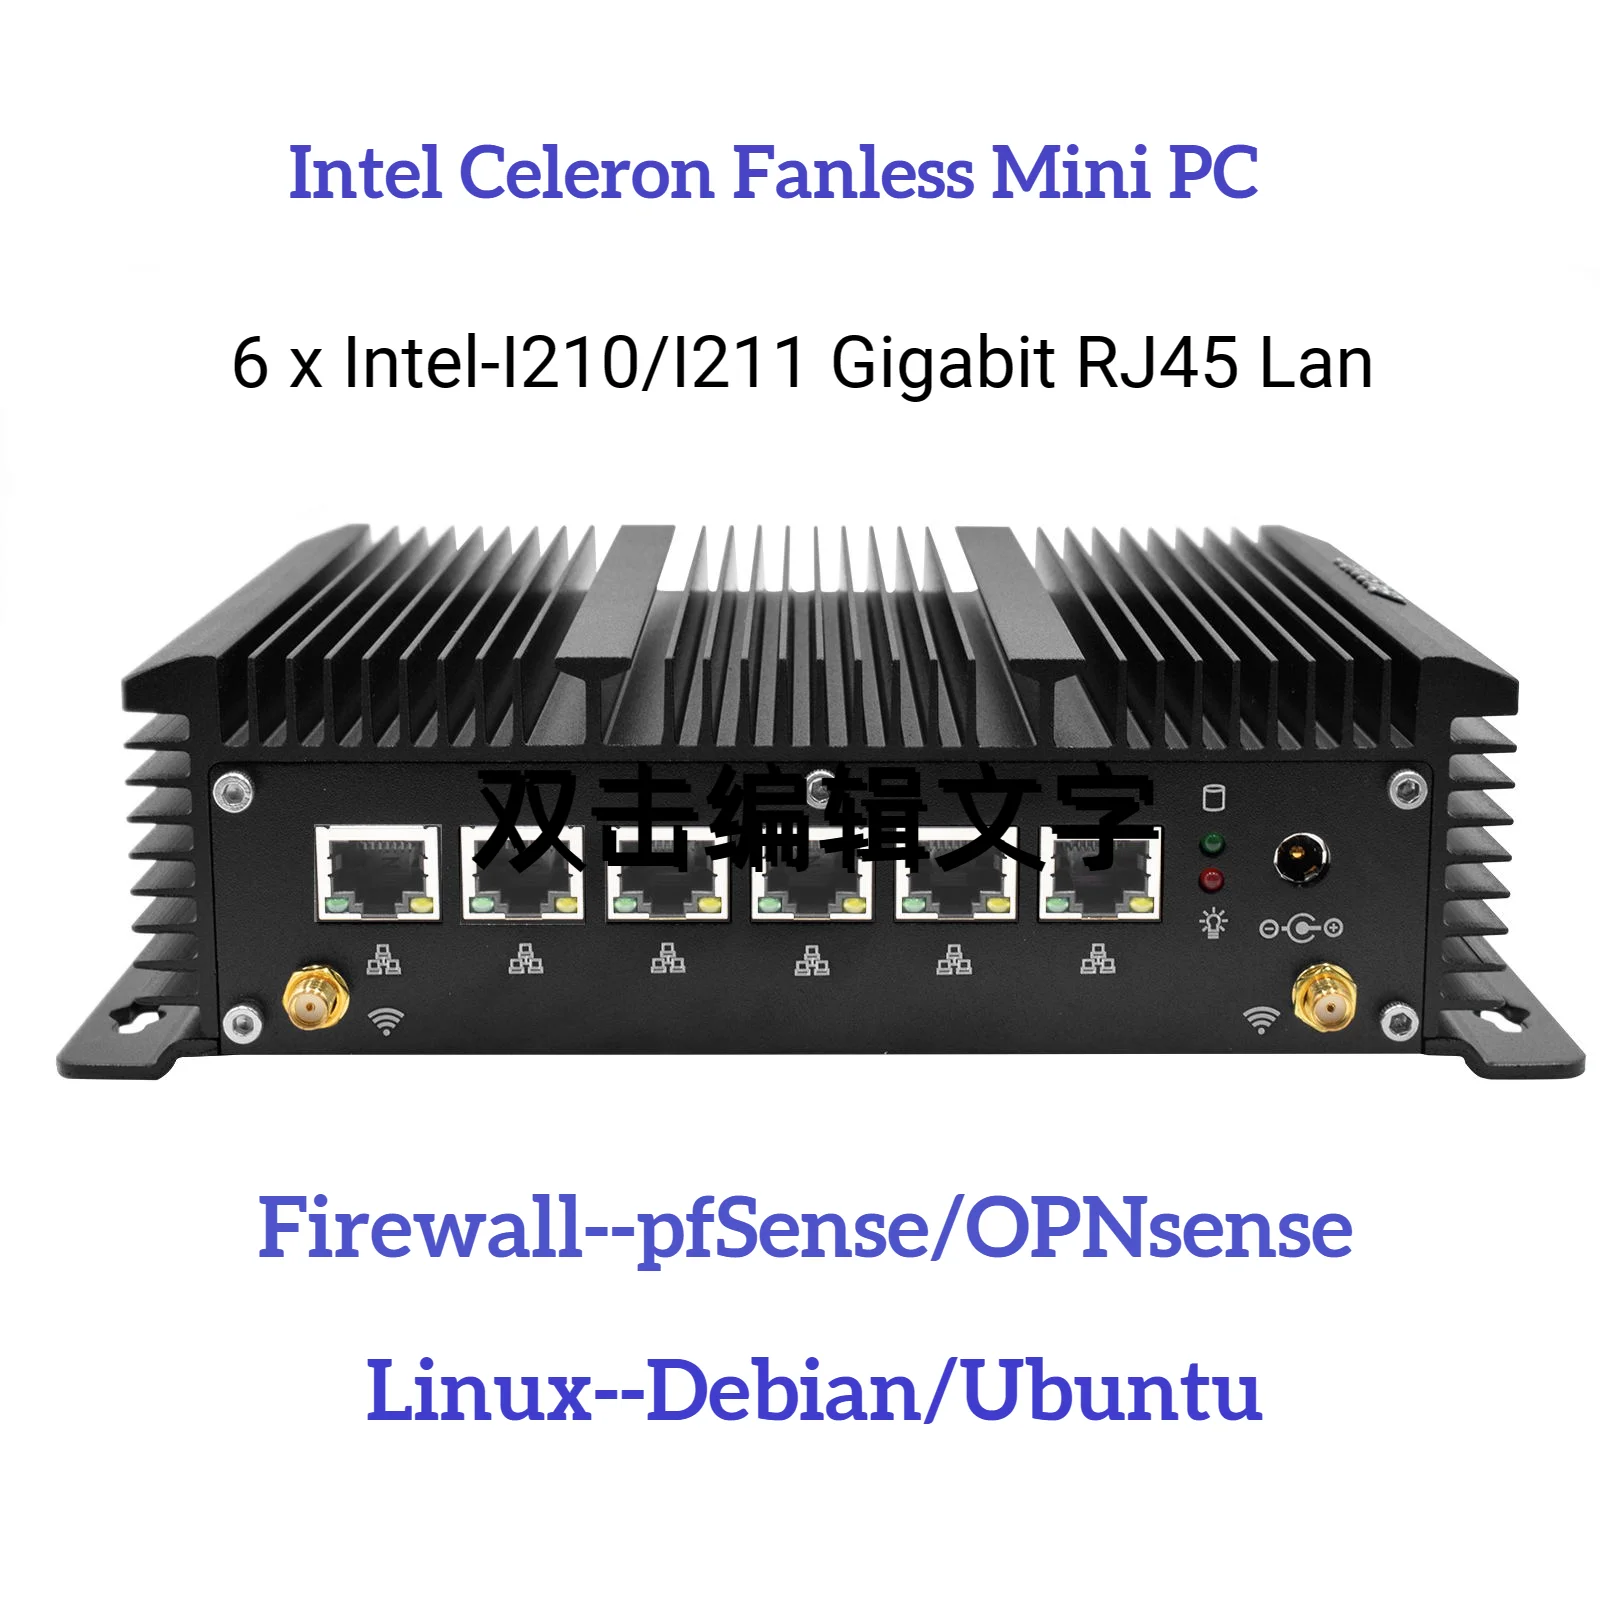 HYSTOU Soft Router Firewall pfSense OPNsense Server 6 LAN Intel I210 I211 NIC Fanless Mini PC Celeron Linux Debian Ubuntu